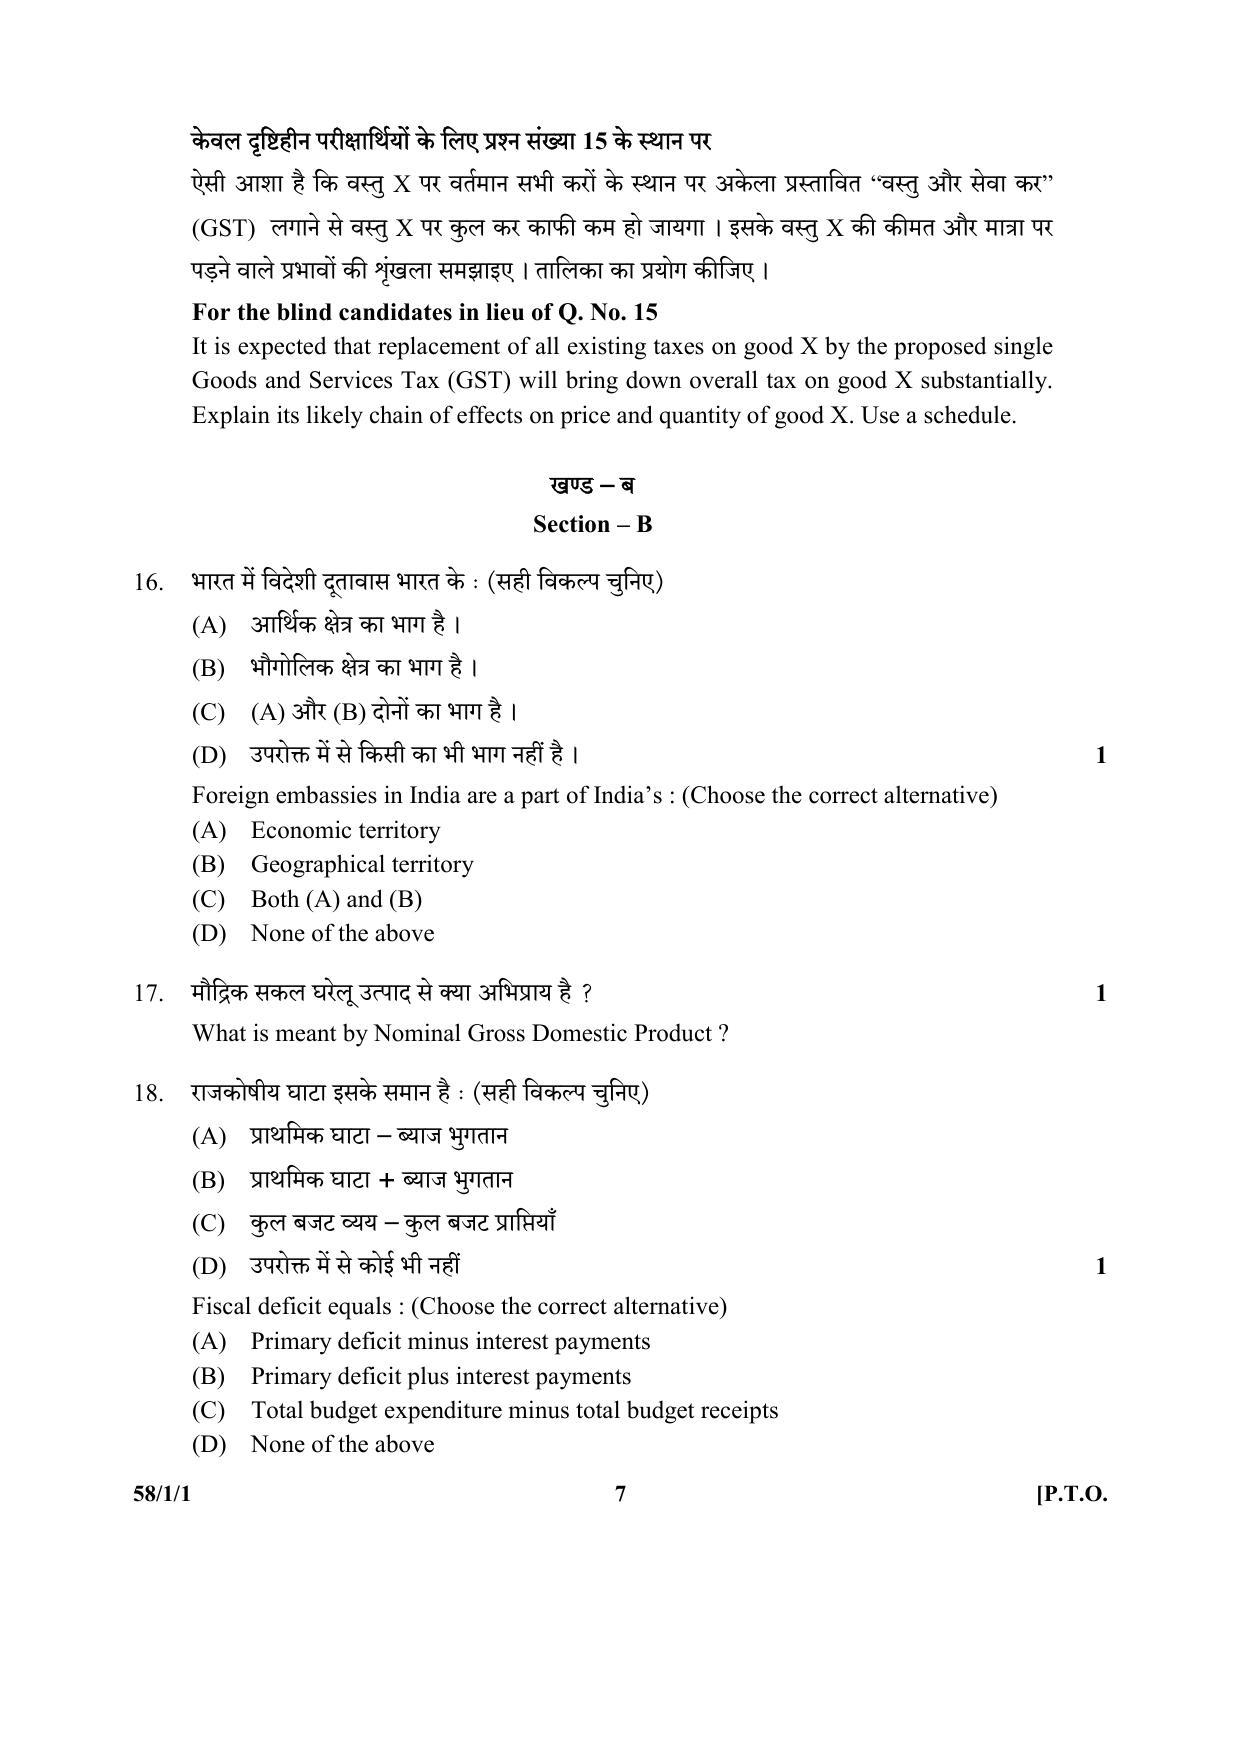 CBSE Class 12 58-1-1 (Economics) 2017-comptt Question Paper - Page 7